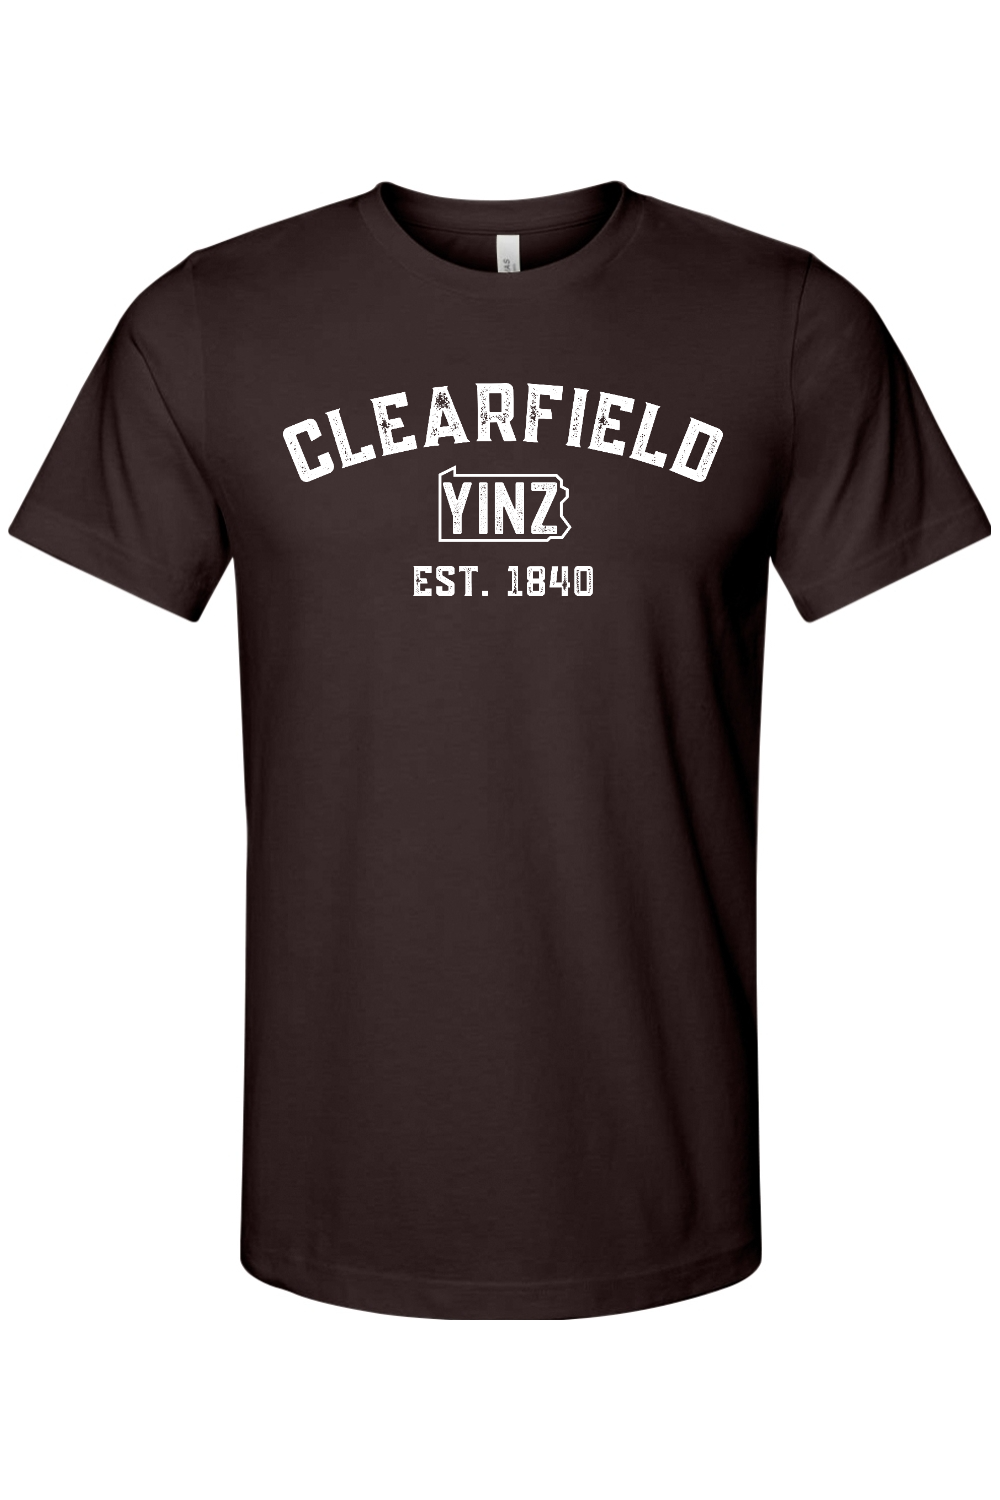 Clearfield Yinzylvania - Yinzylvania